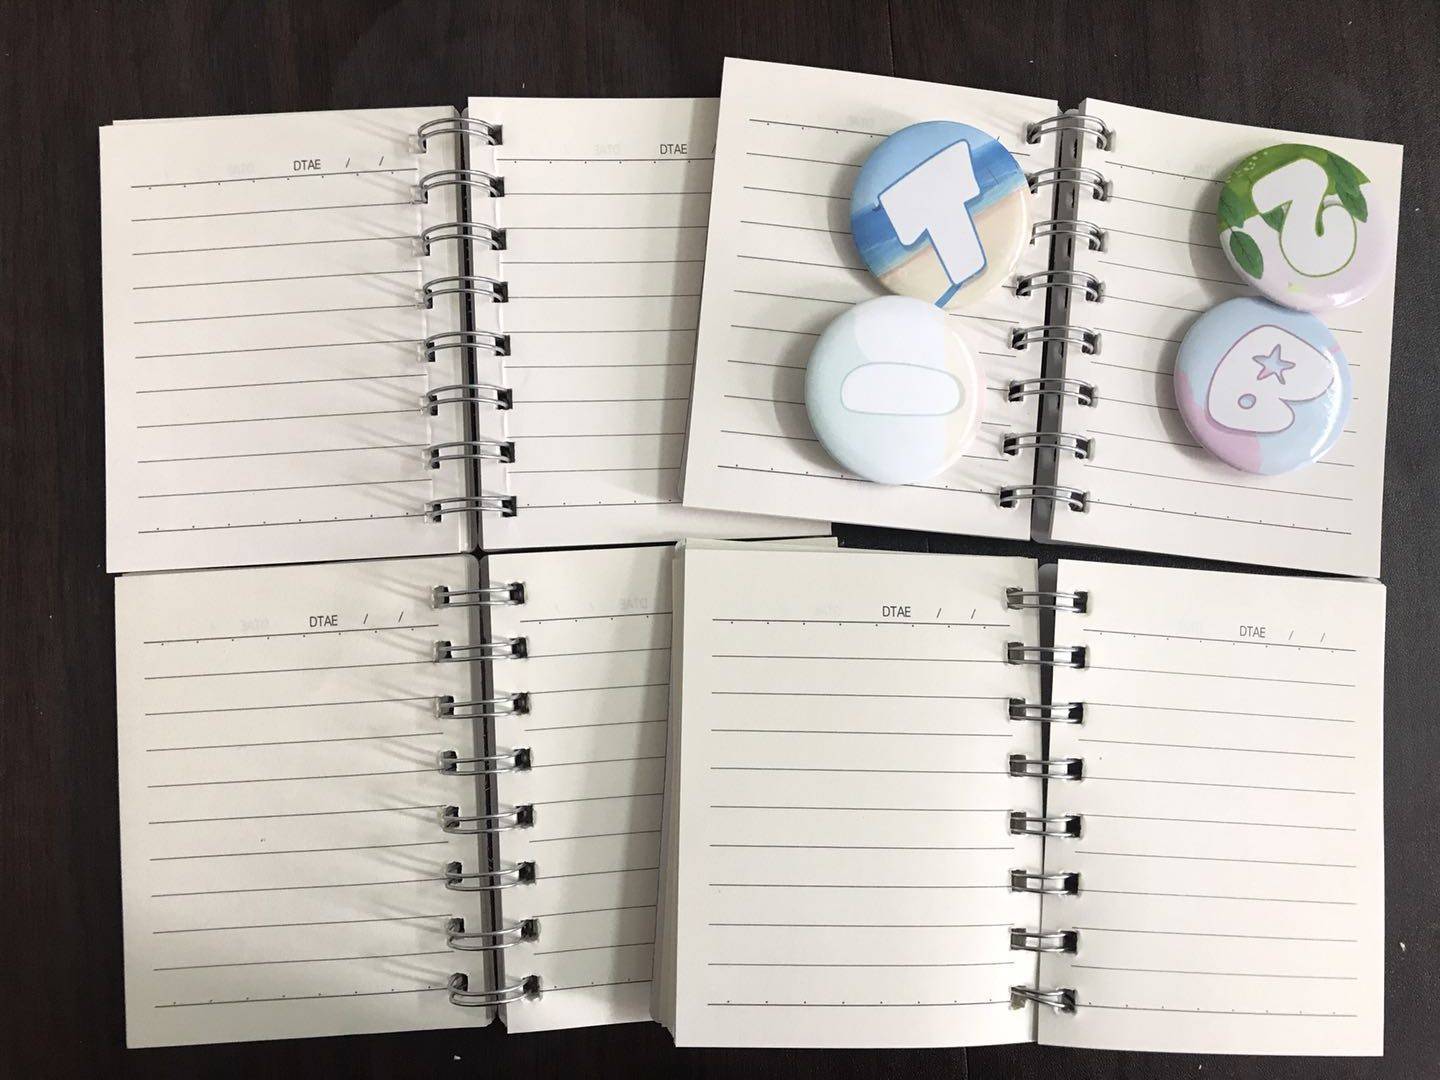 Sổ tay gáy lò xo thích hợp cho ghi chú công việc học tập, kích thước nhỏ gọn Kpop BTS BT21 Daily Office Supplies Week Planner Spiral Notebooks Day Plan Diary Notepads Meno Pad Office School Kids friends stationery gift